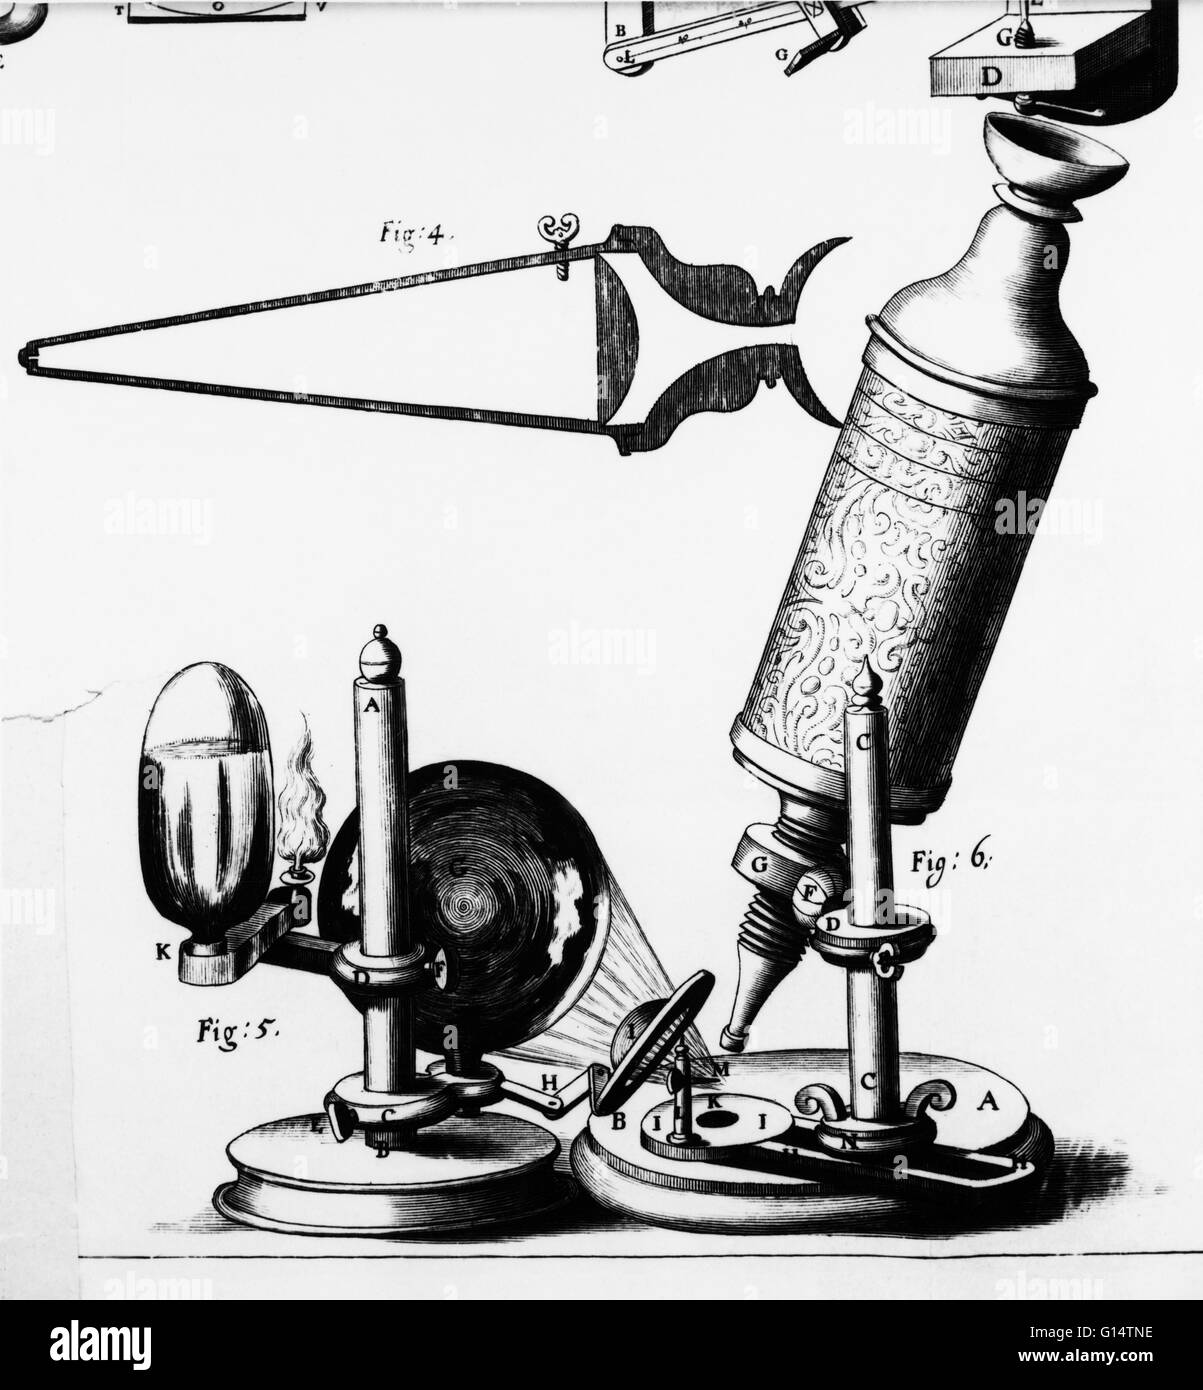 Robert Hooke (1635-1703) incisione del suo microscopio come riscontrato  nella sua Micrographia. Hooke fu un chimico, fisico e architetto. Egli  materialmente ha inventato il microscopio composto, il quadrante e un  barometro marino.